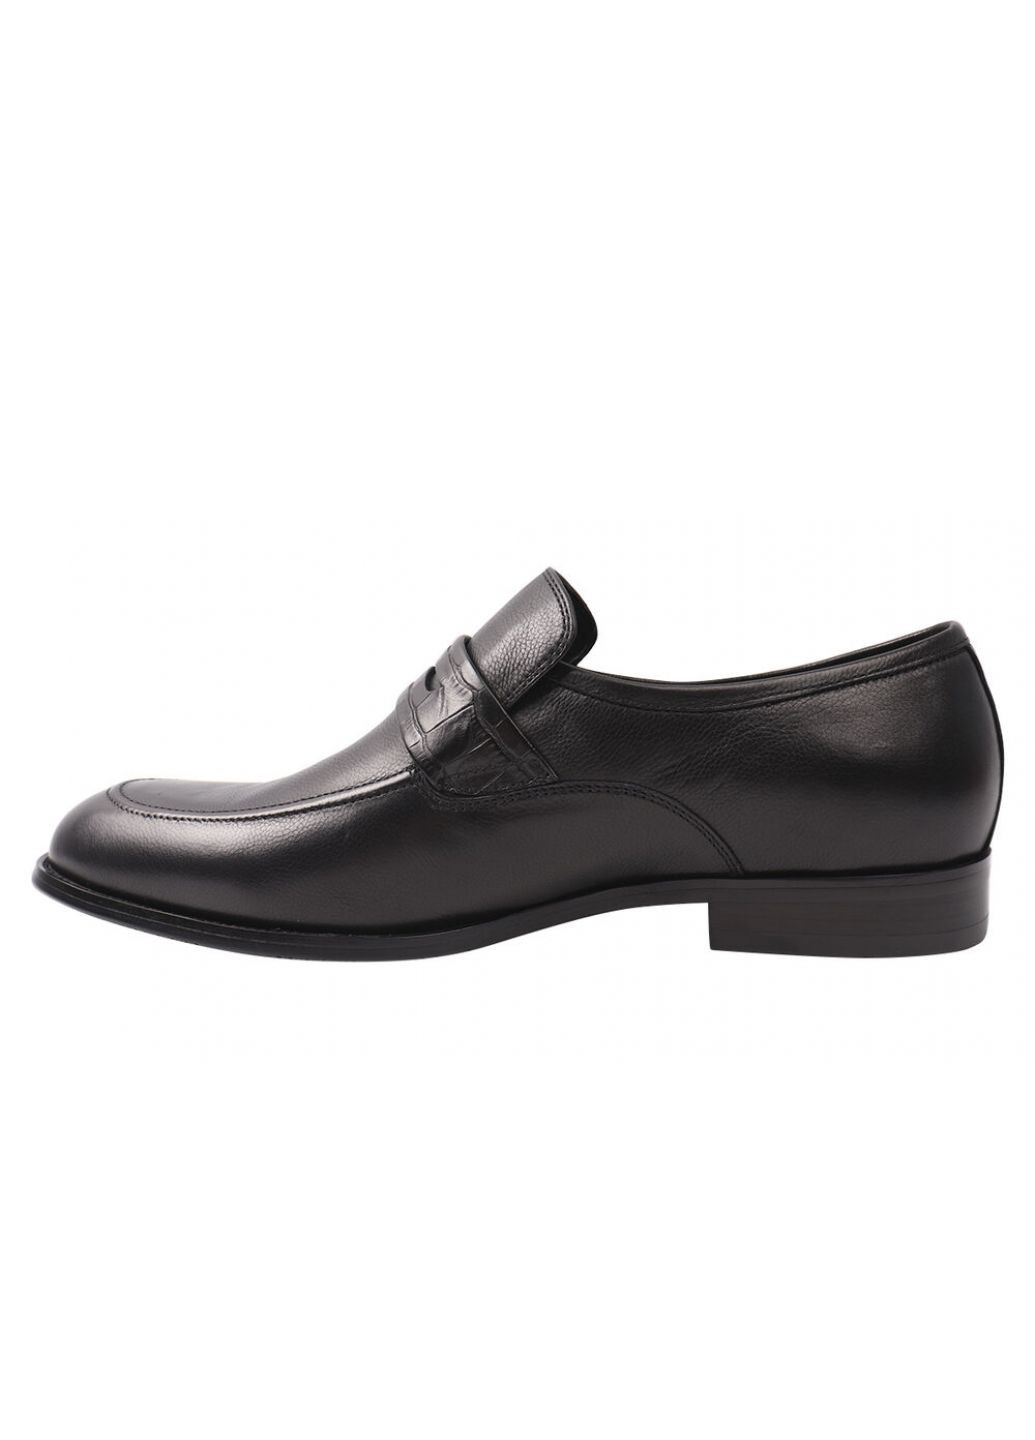 Туфлі чоловічі з натуральної шкіри, на низькому ходу, колір чорний, Brooman 866-21/22dt (257438199)